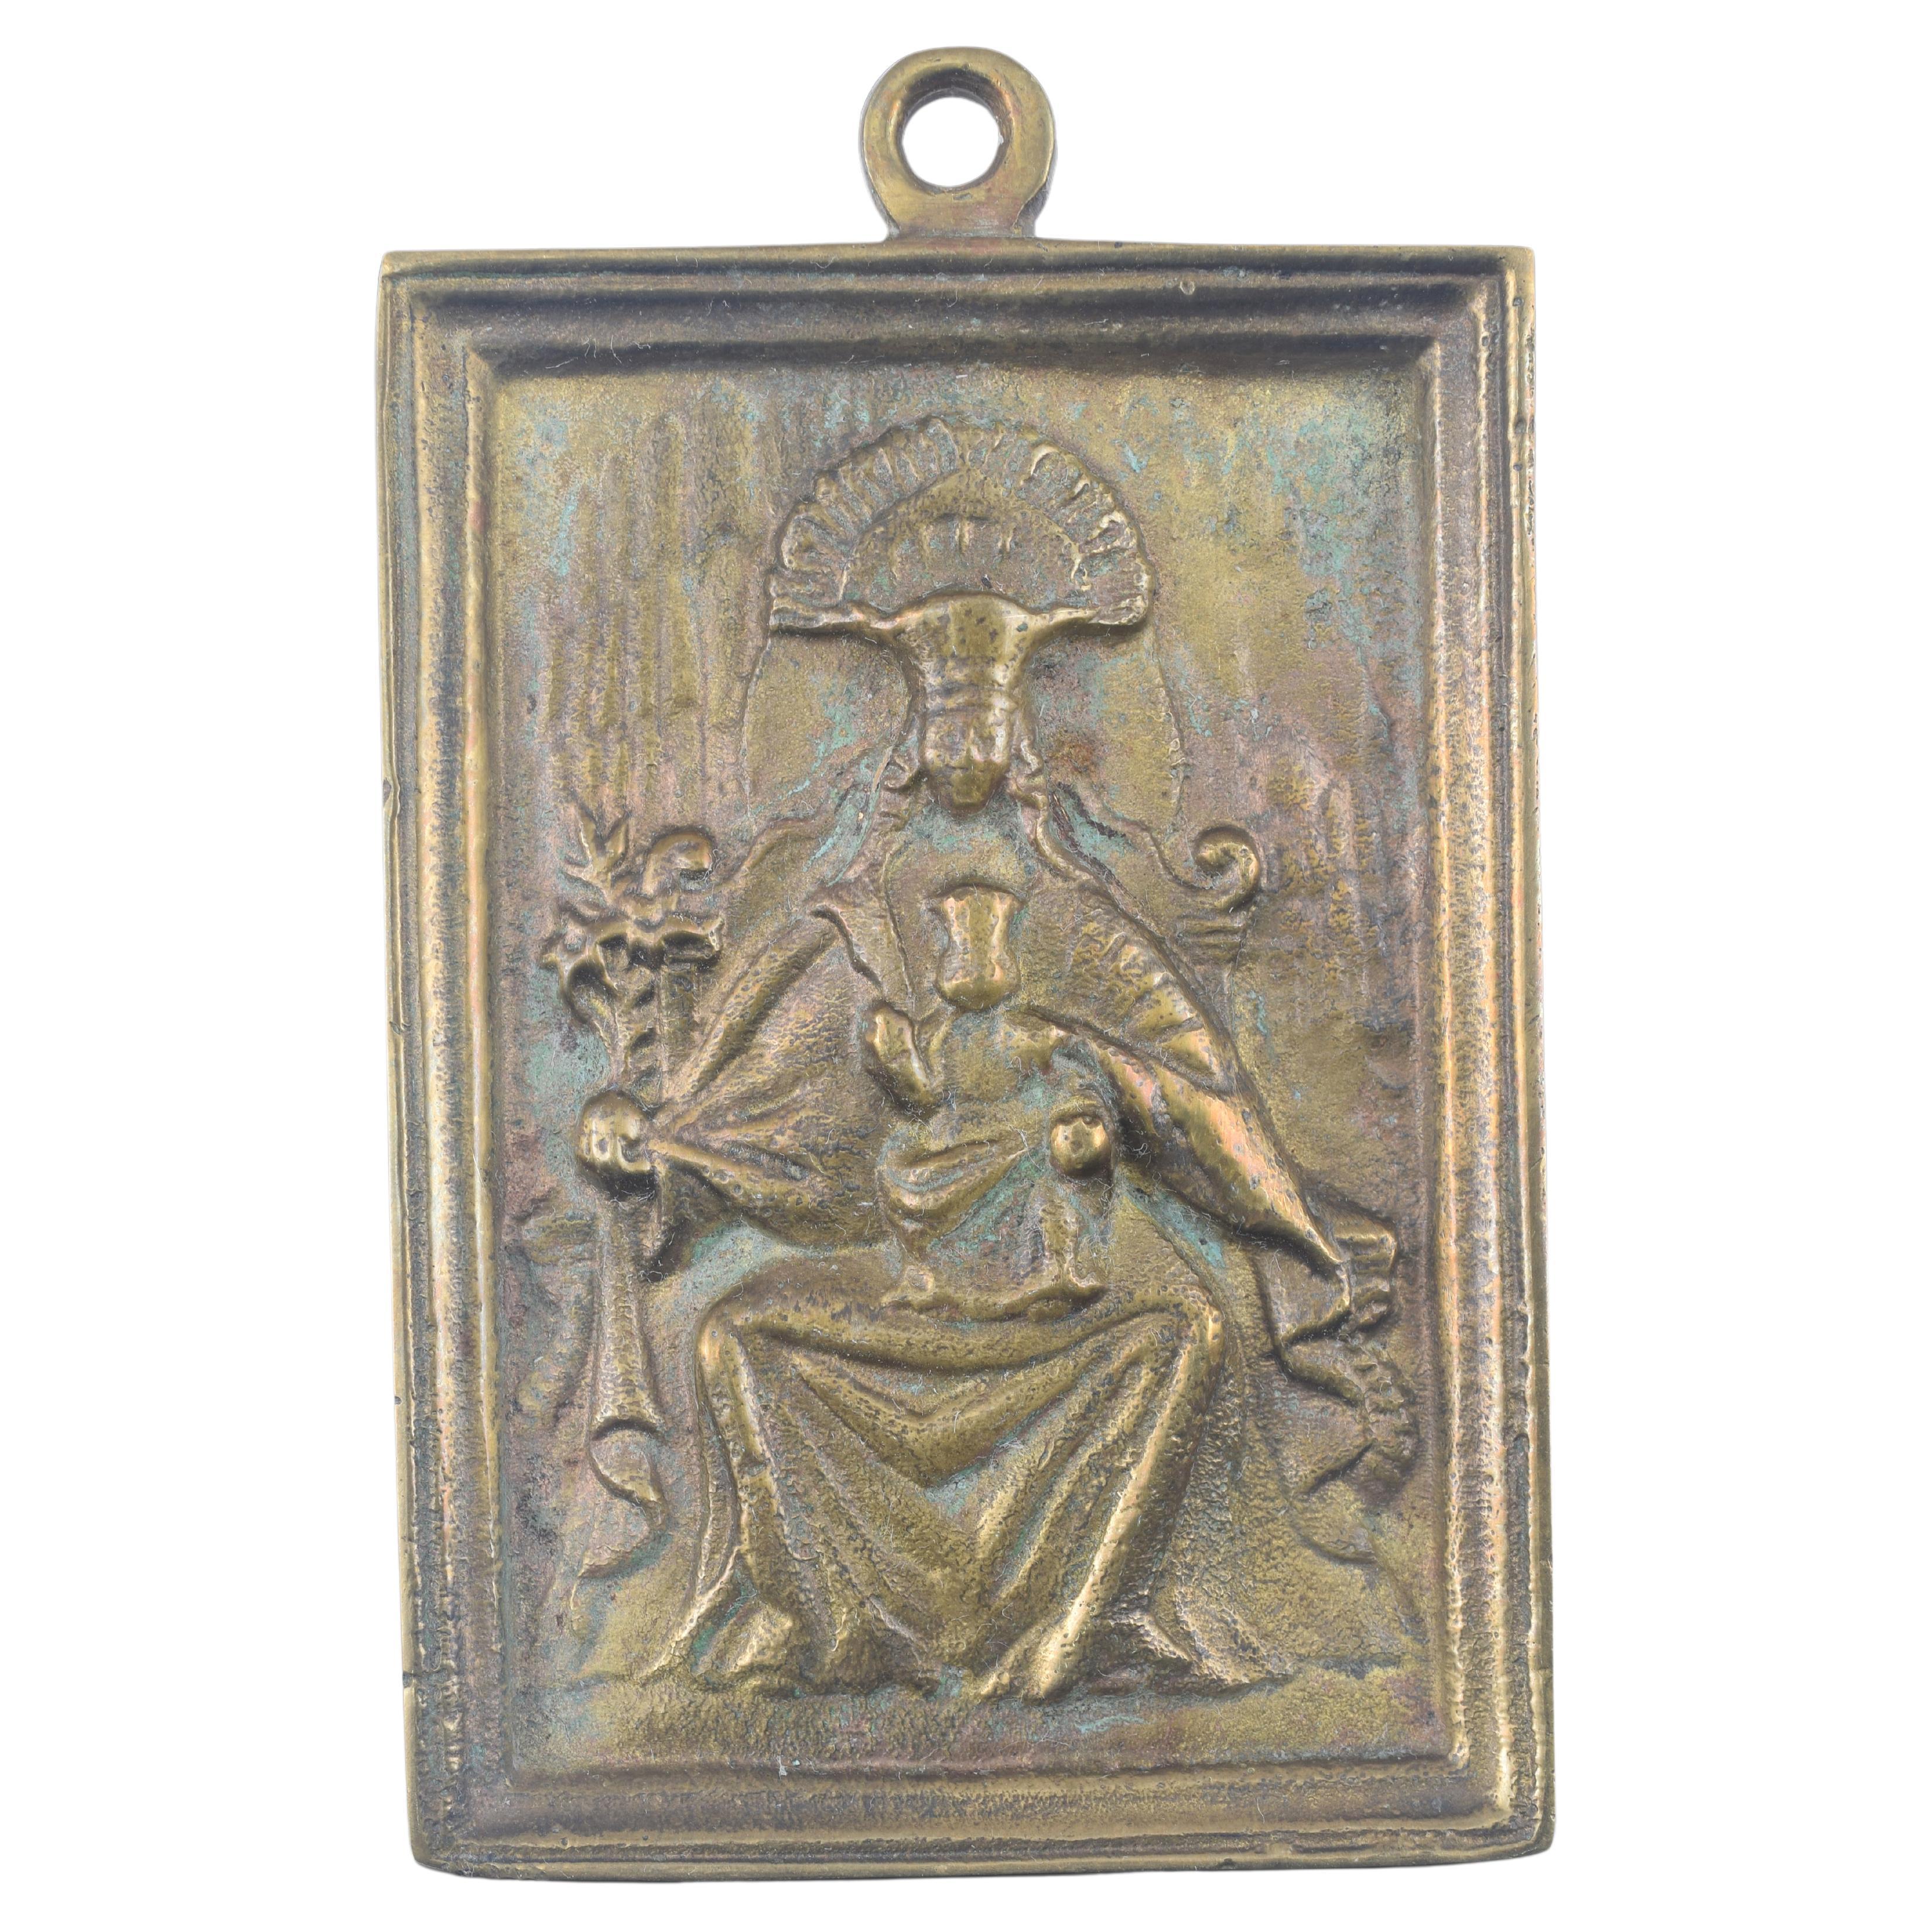 Plaque de dévotion, Vierge de Montserrat. Bronze. École espagnole, 19e siècle.